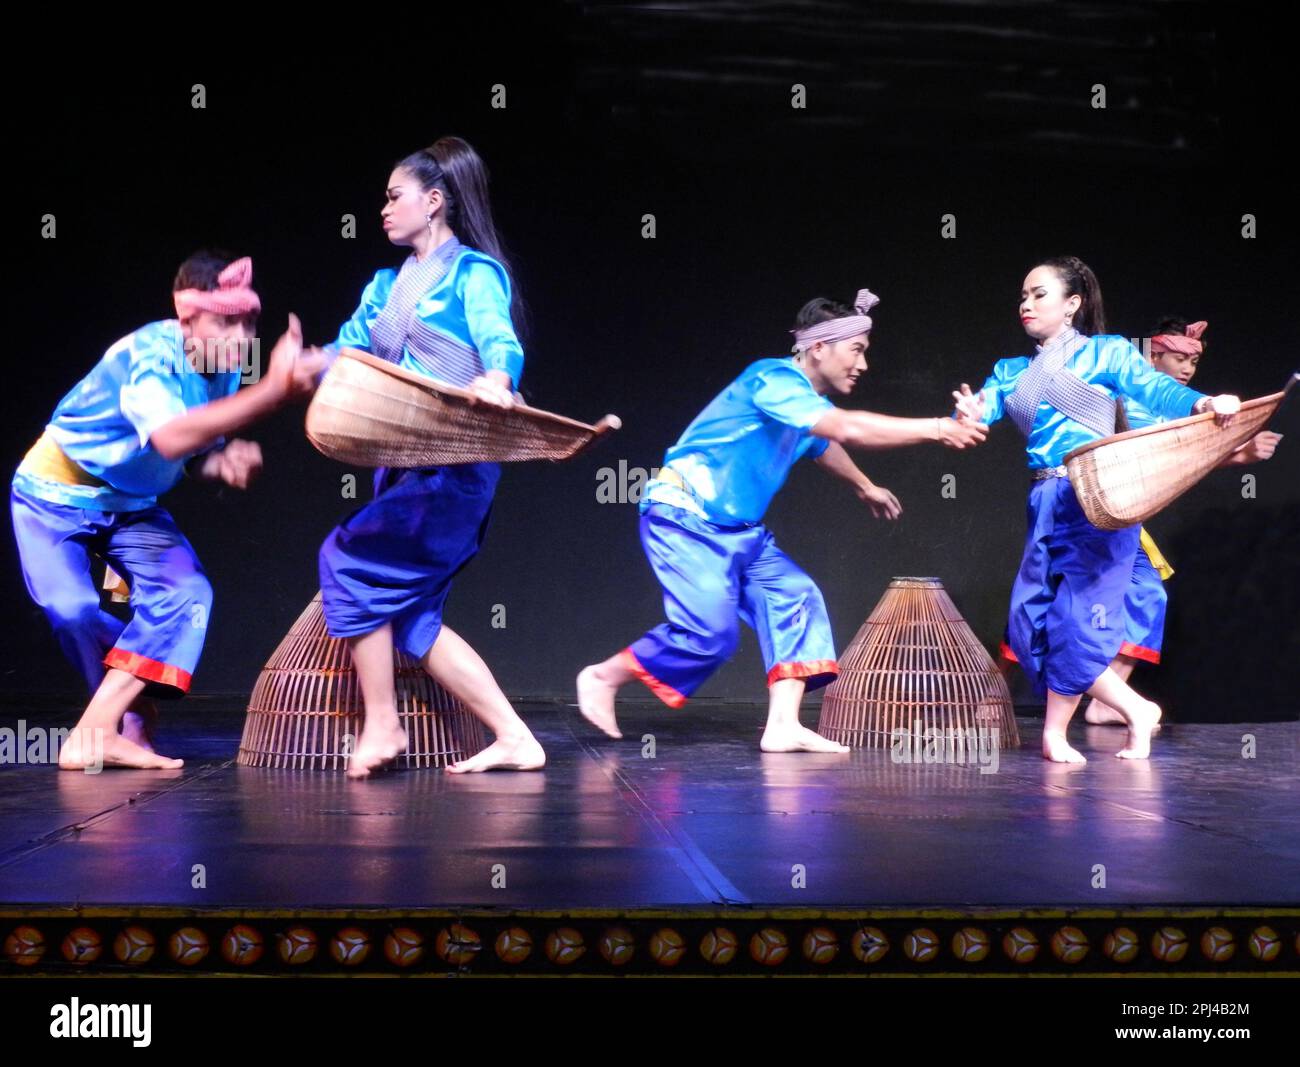 Kambodscha, Phnom Penh: Traditionelle Tanzvorstellung im Nationalmuseum, einschließlich einer Vielzahl klassischer und folkloristischer Tänze. Fisher-Tanz. Stockfoto